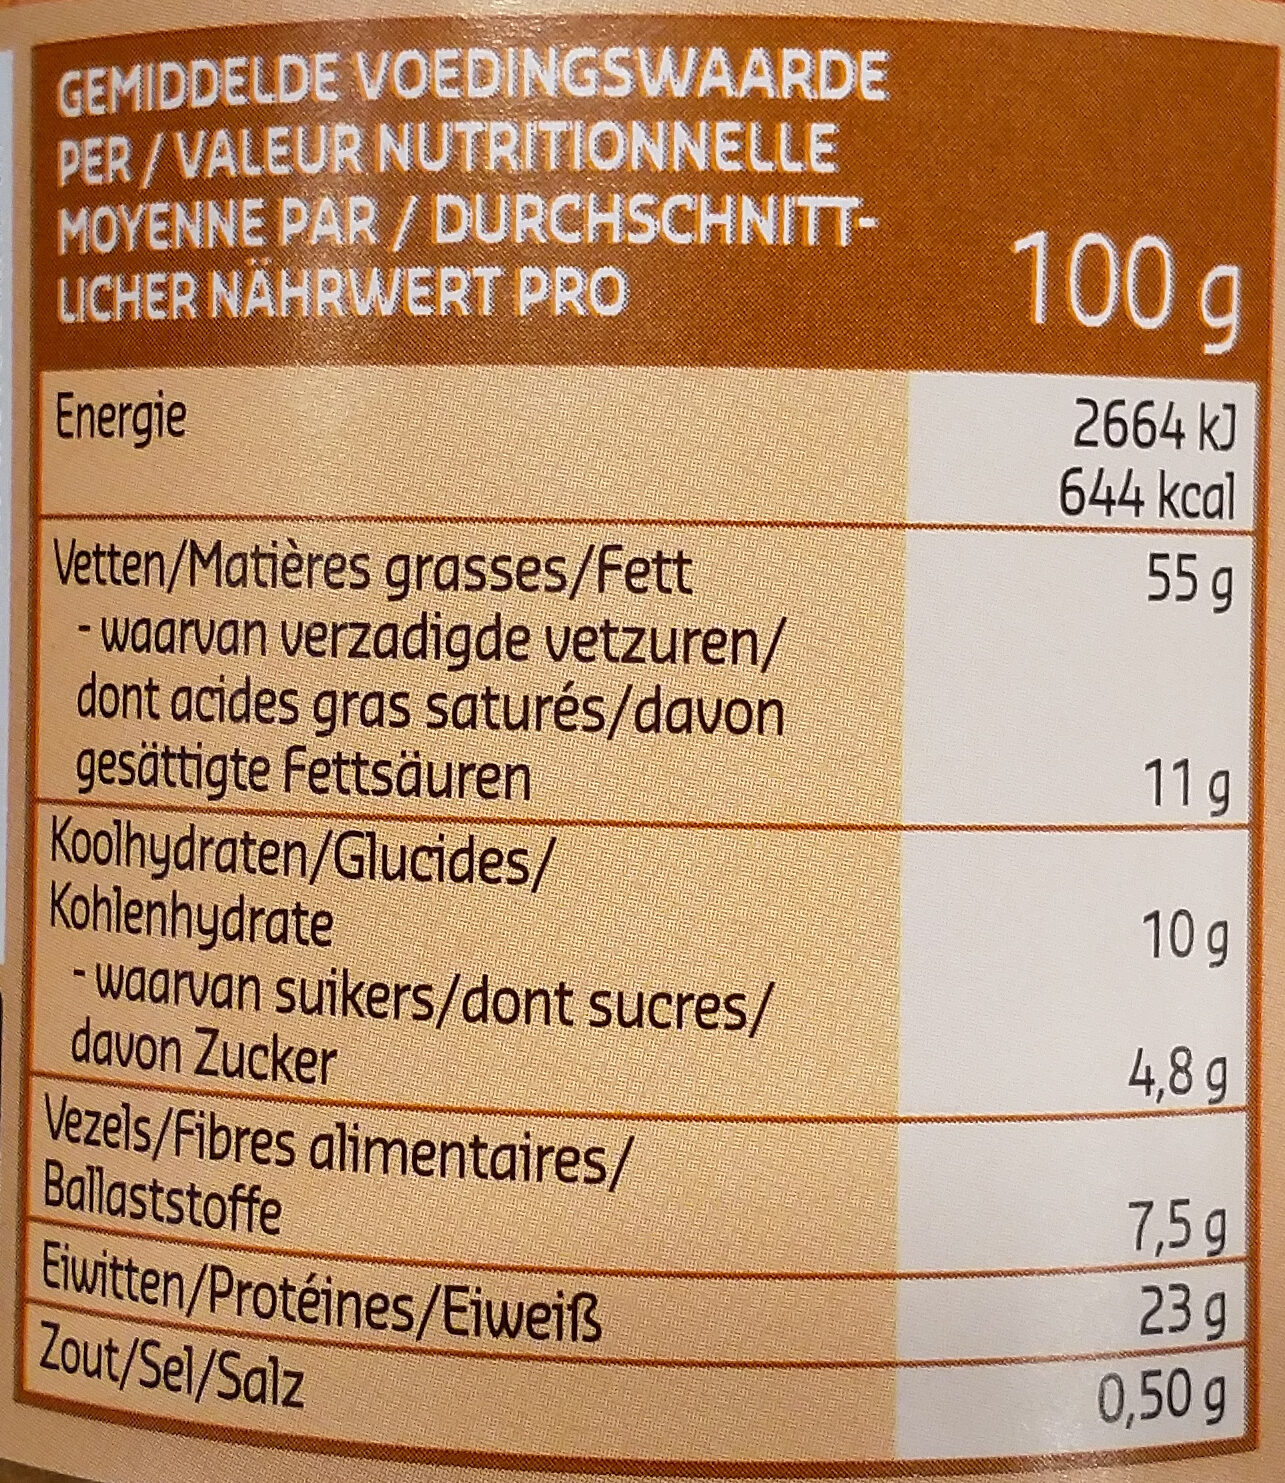 Beurre de cacahuète - Información nutricional - fr